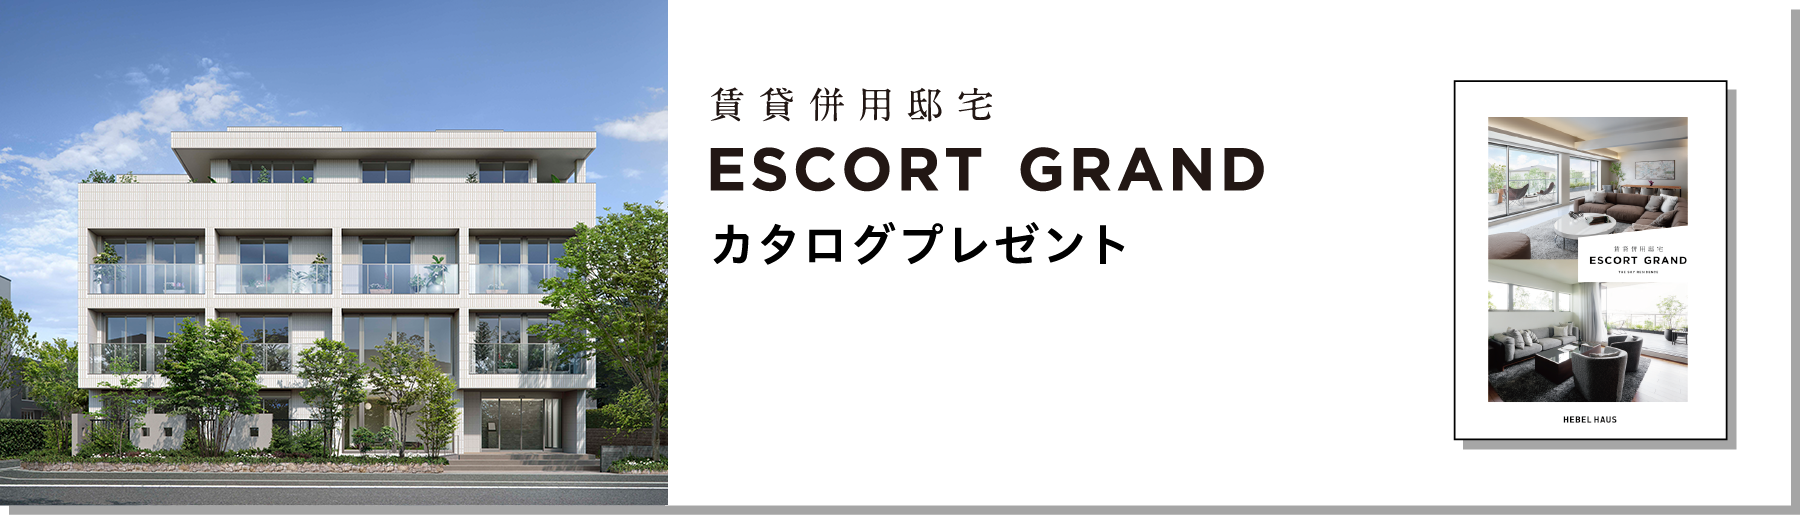 賃貸併用住宅 ESCORT GRAND カタログプレゼント